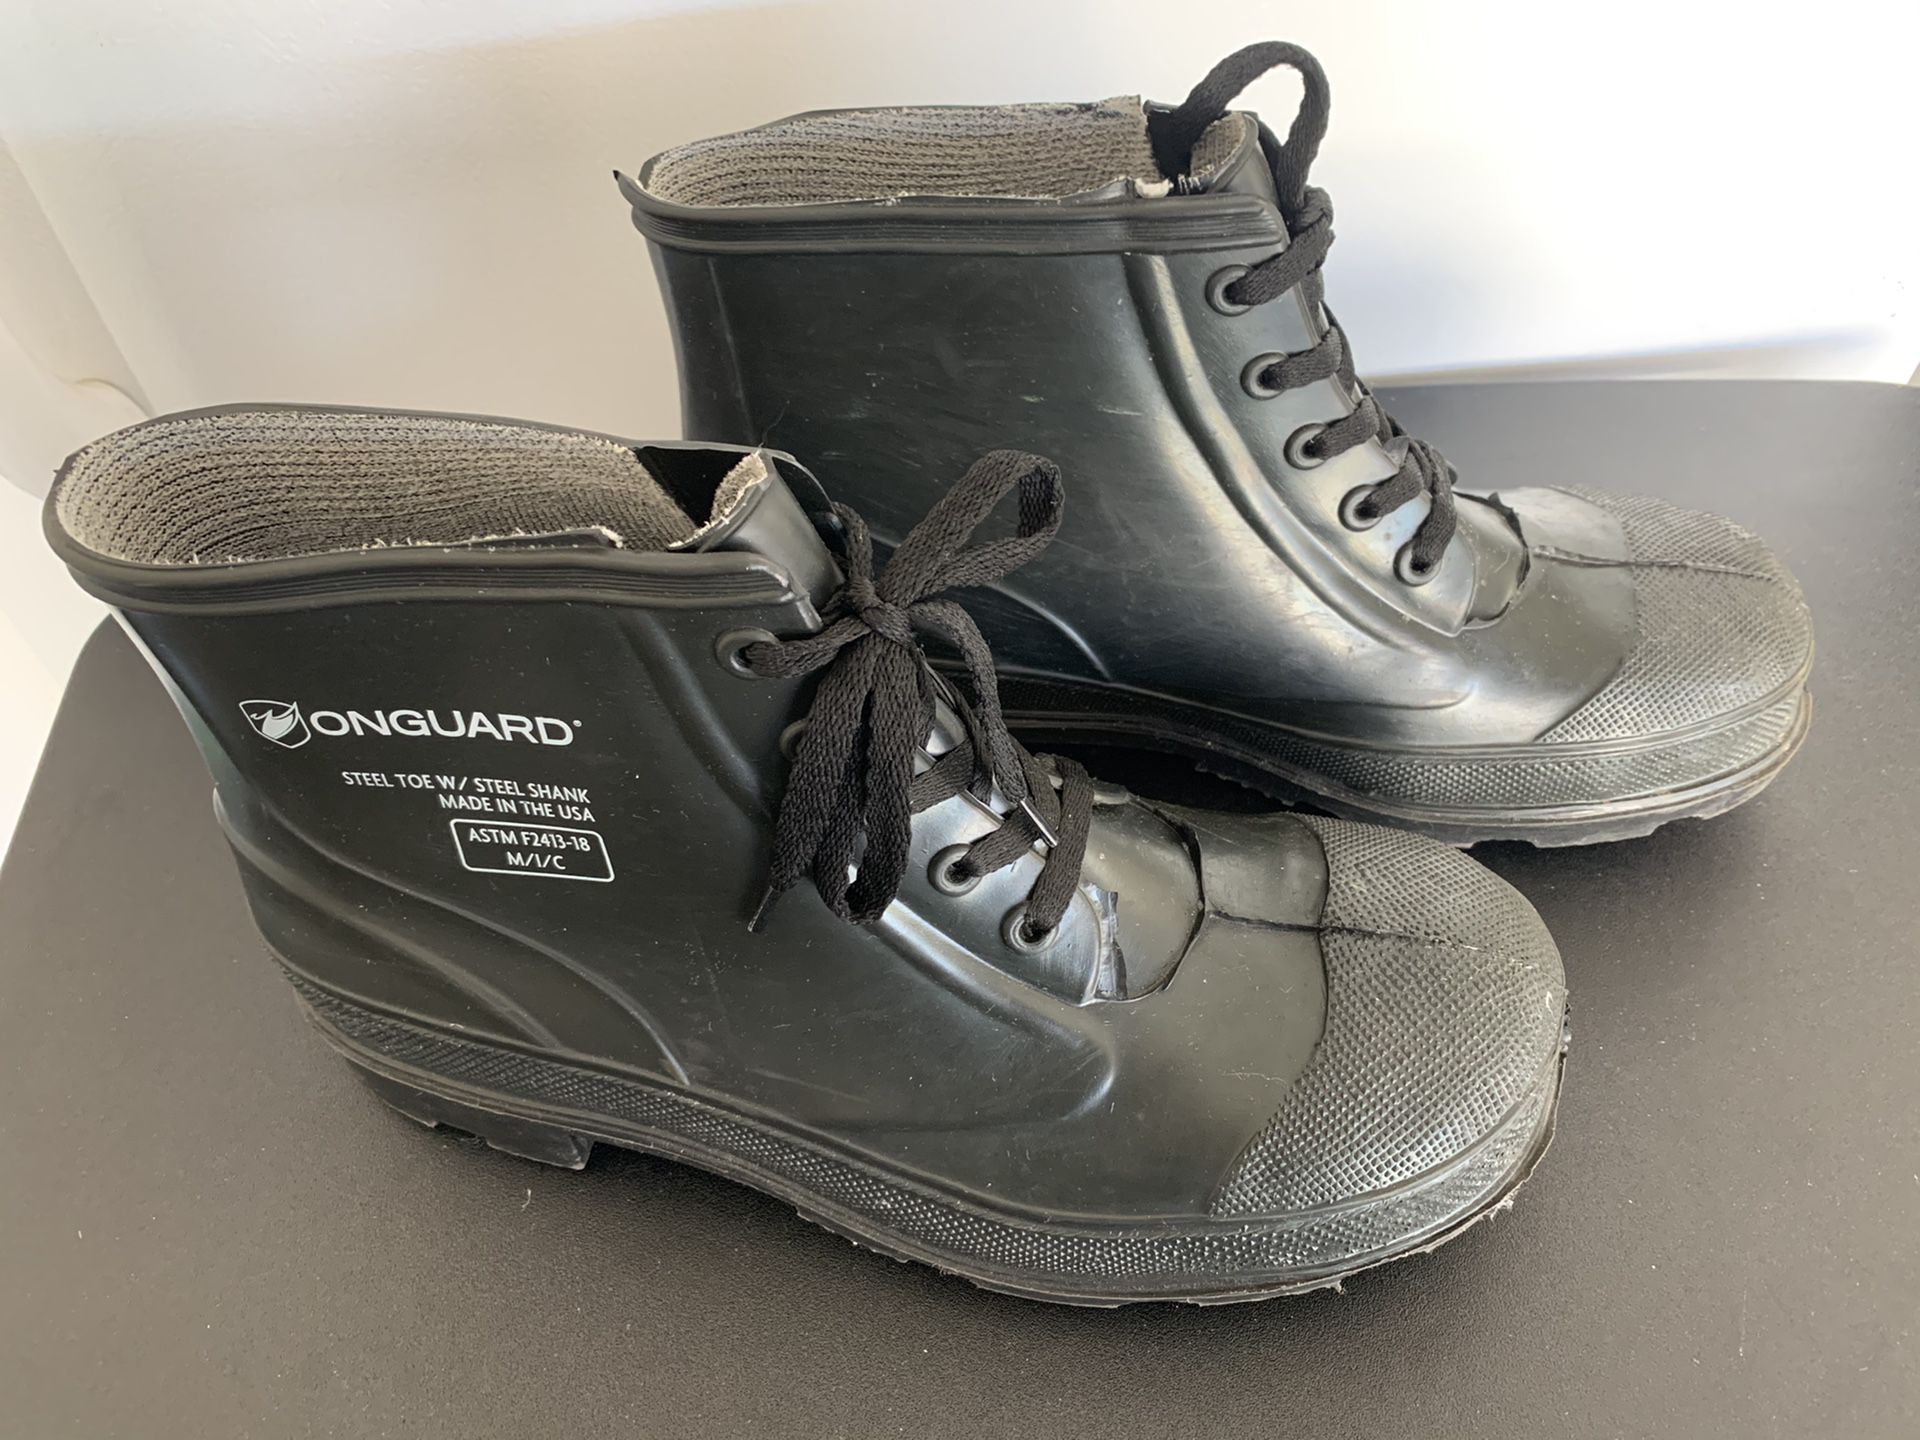 Onguard men’s size 11 steel toe w/ steel shank rubber work boots